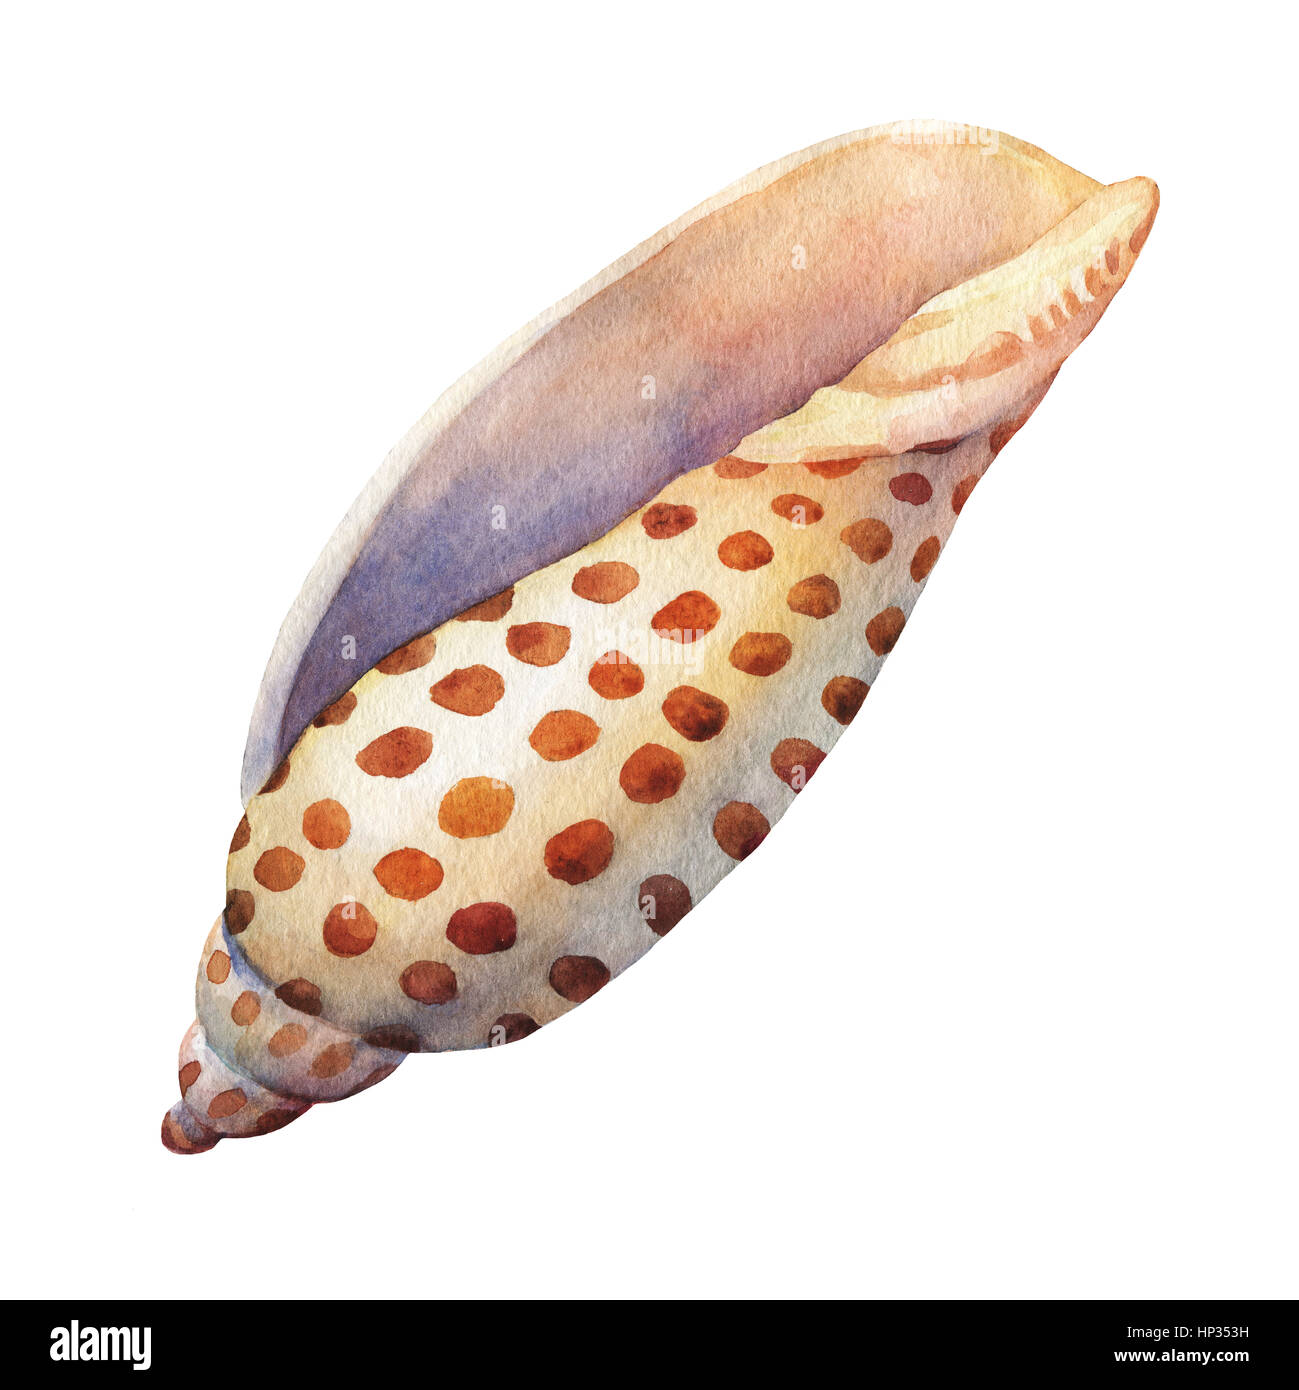 Objektmenge Unterwasserwelt - Illustrationen von verschiedenen tropischen Muscheln und Seesterne.  Handgezeichnete Aquarellmalerei auf braunem Hintergrund. Stockfoto